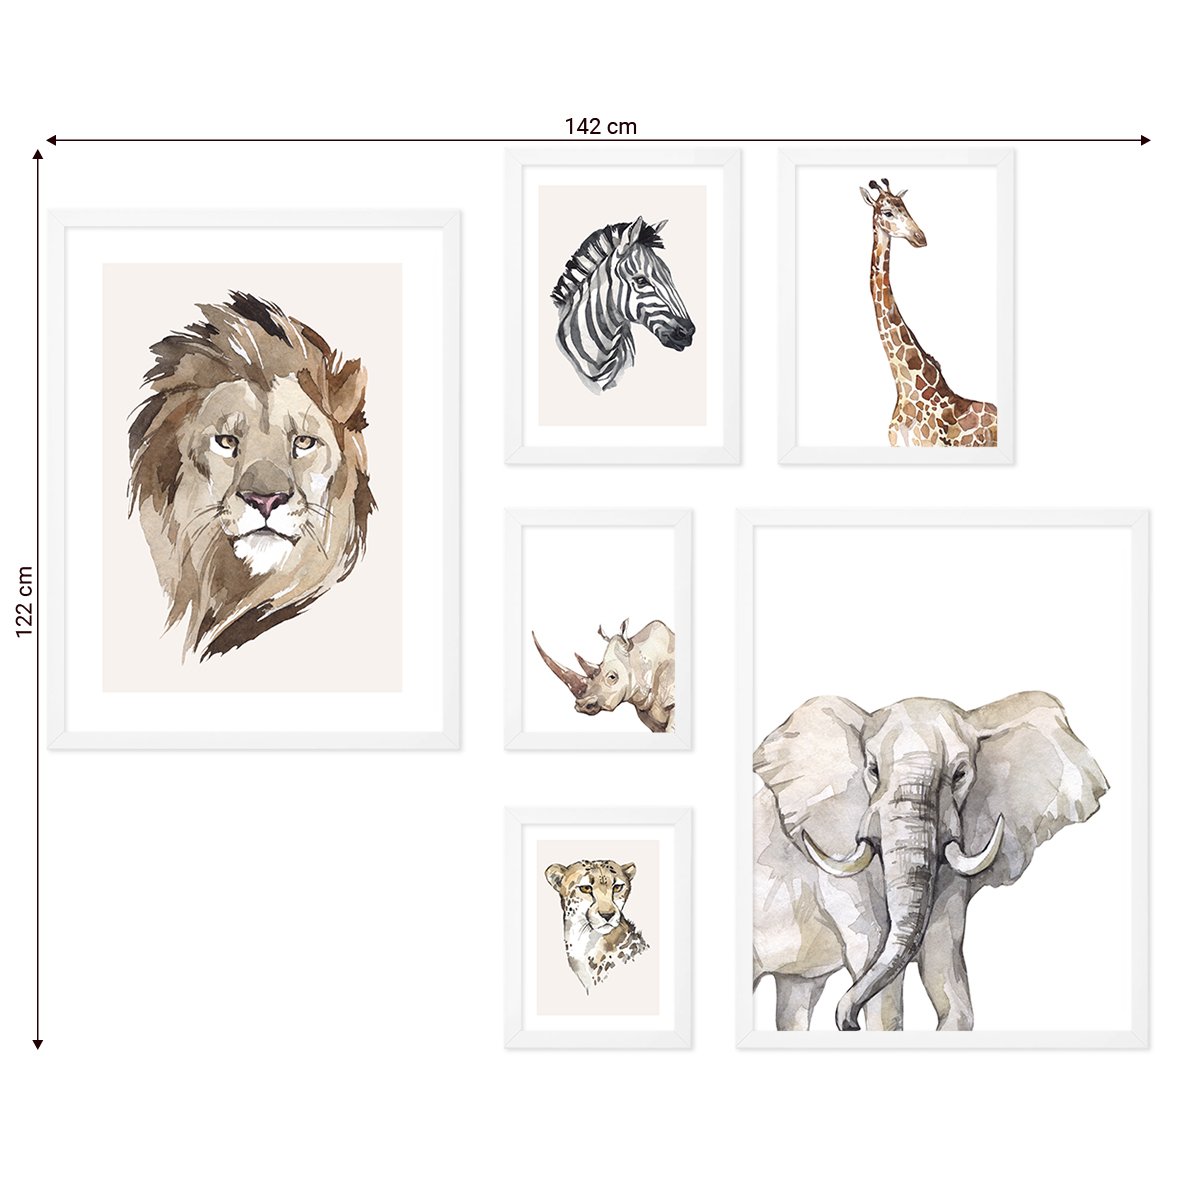 Galeria obrazów do pokoju dziecięcego - dzikie zwierzęta Afryk iw białych ramkach#ramka_biala